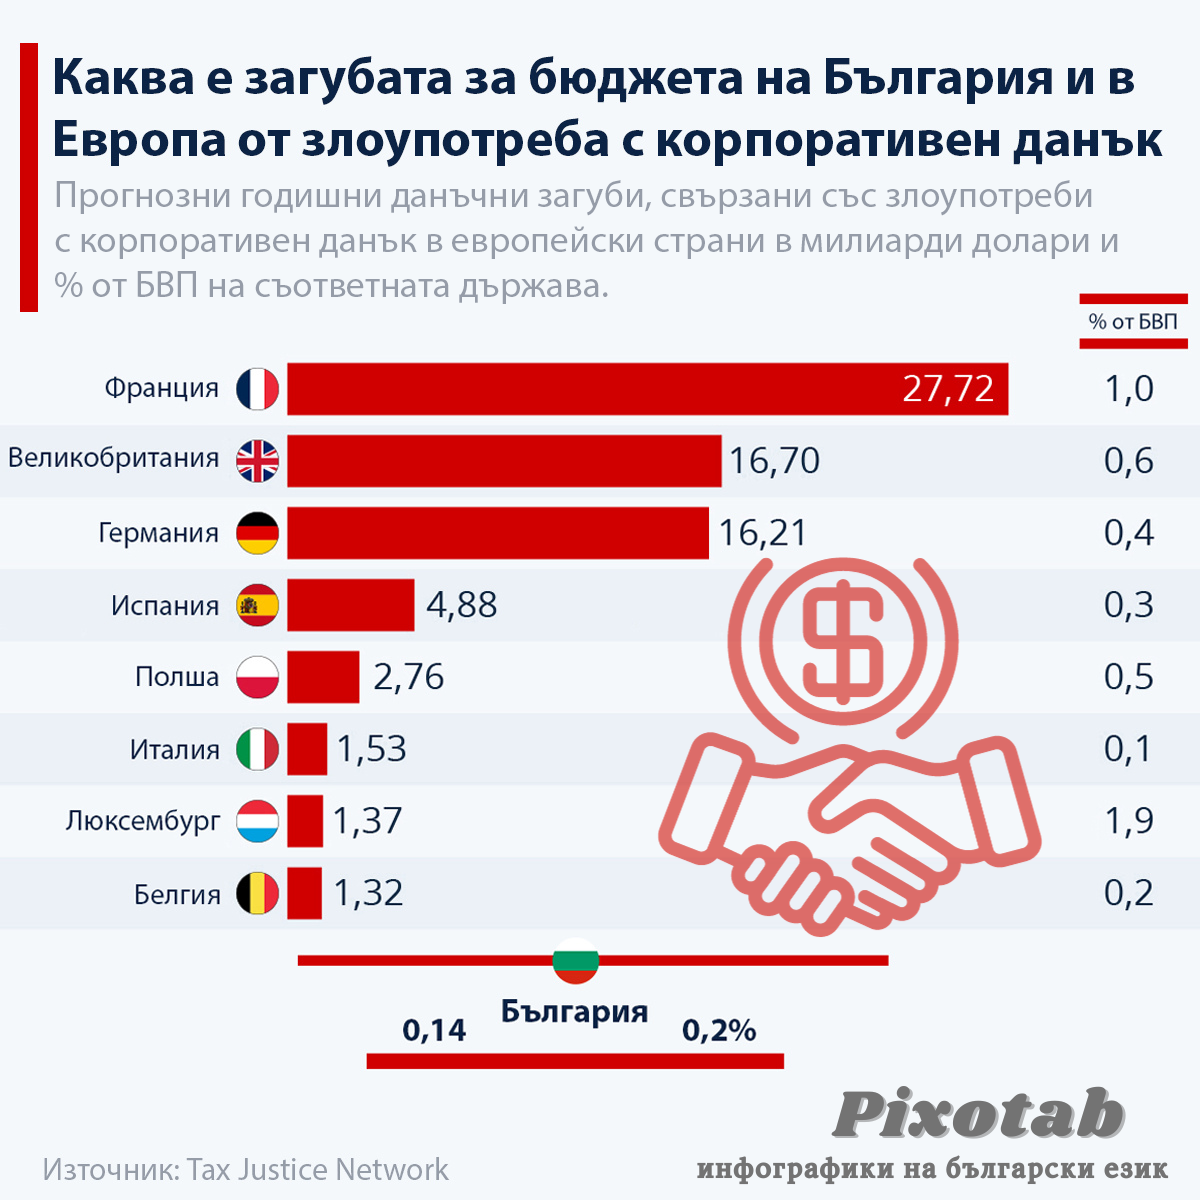 Каква е загубата за бюджета на България и в Европа от злоупотреба с корпоративен данък